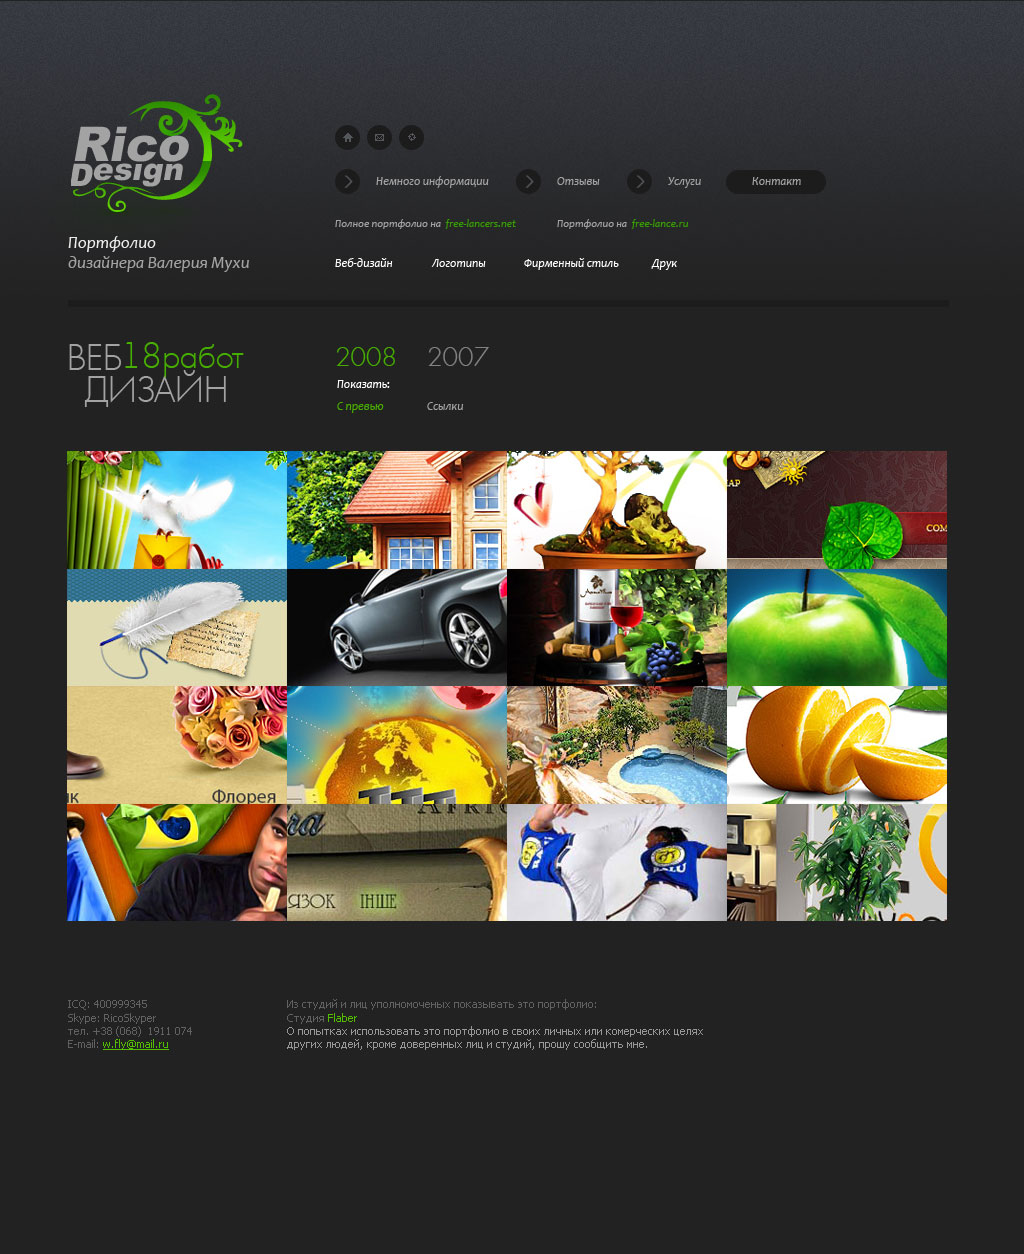 Rico Design - портфолио Валерия Мухи